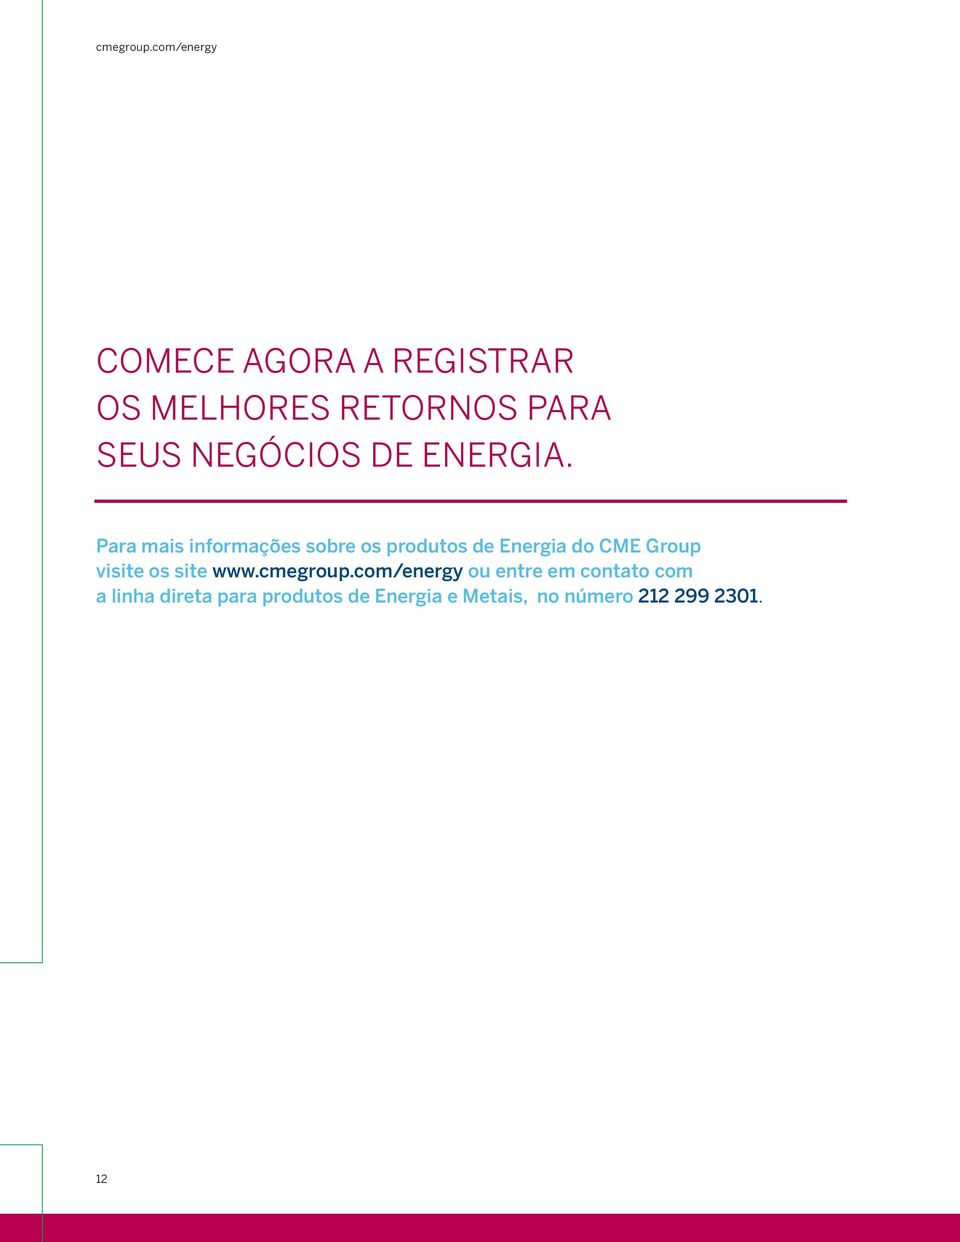 Para mais informações sobre os produtos de Energia do CME Group